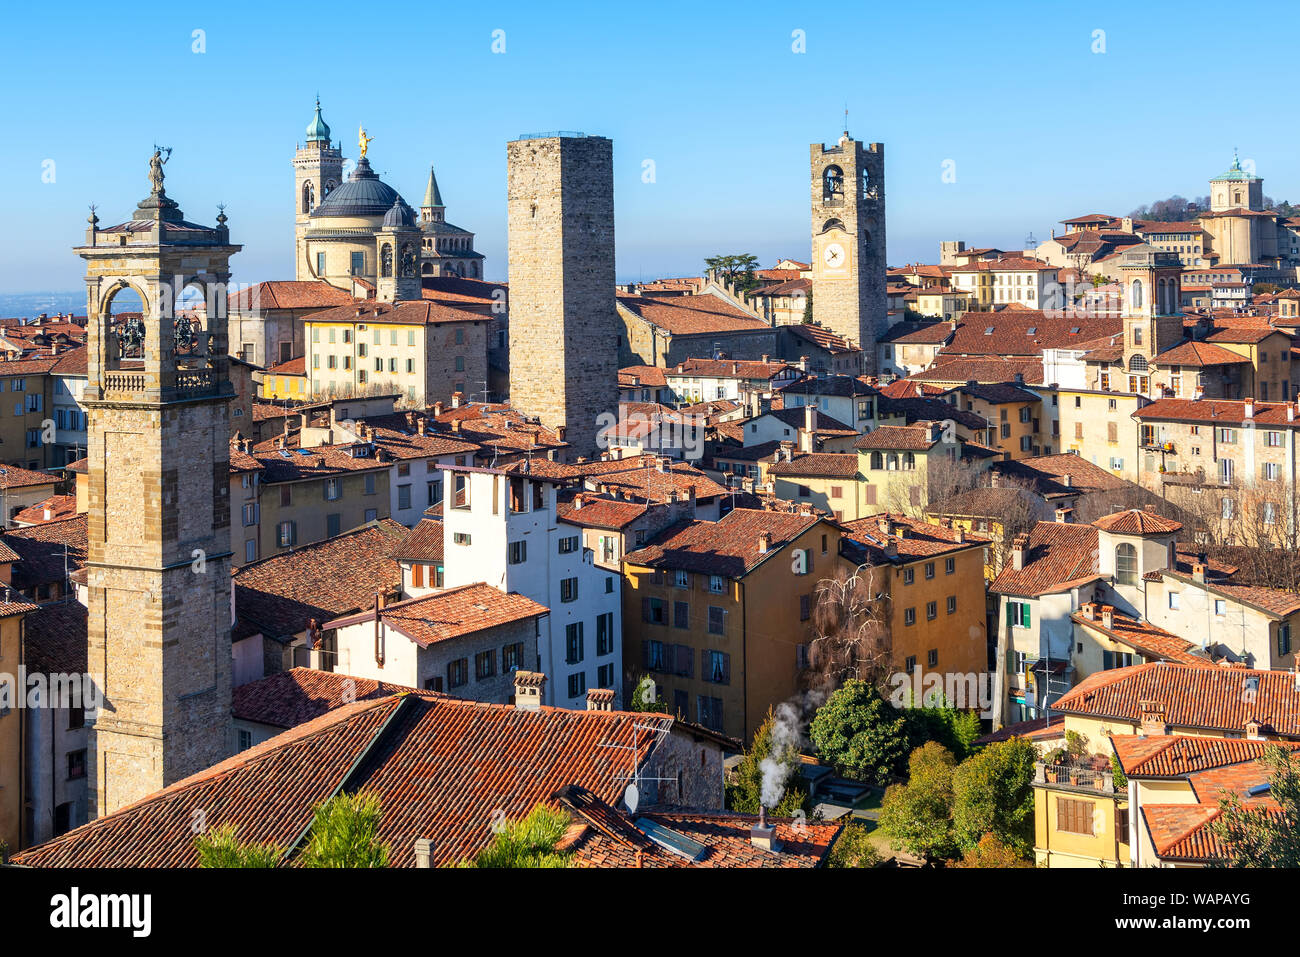 Bergame, vue sur les toits de tuiles rouges et les tours de la vieille ville historique médiévale, Lombardie, Italie Banque D'Images